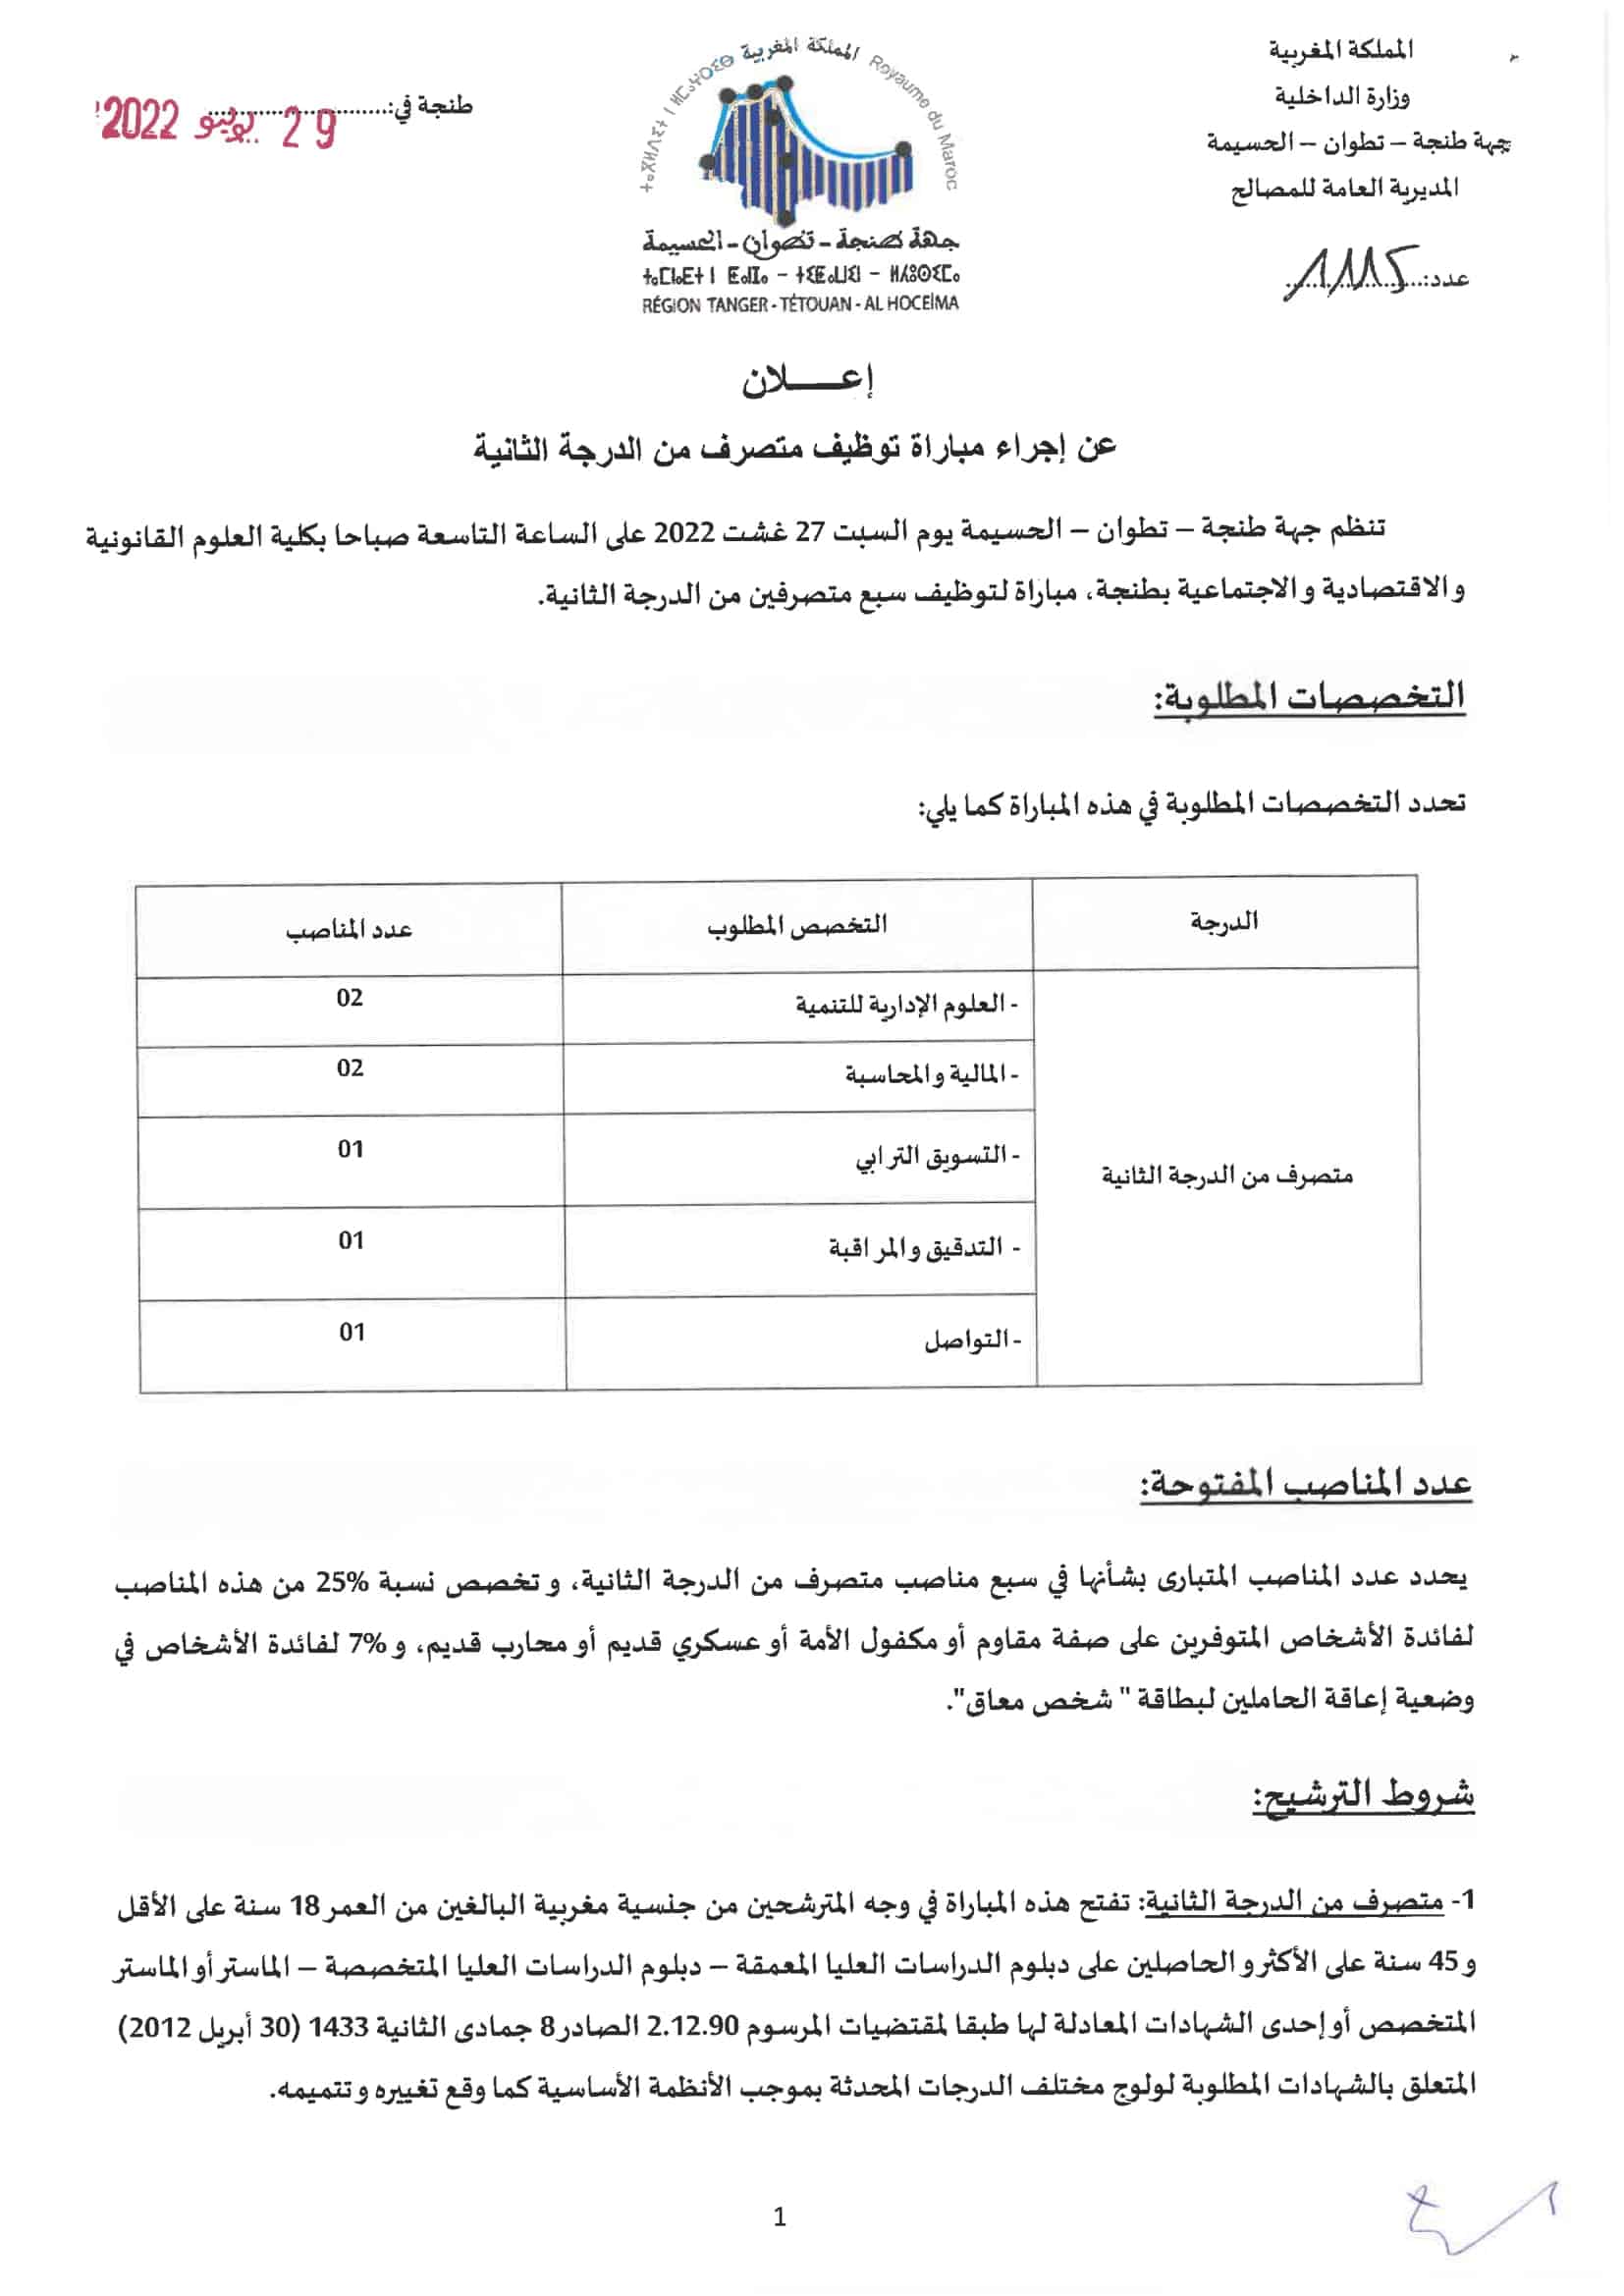 2299 1 Concours Conseil Régional de Tanger Tétouan Al Hoceïma 2022 (8 postes)